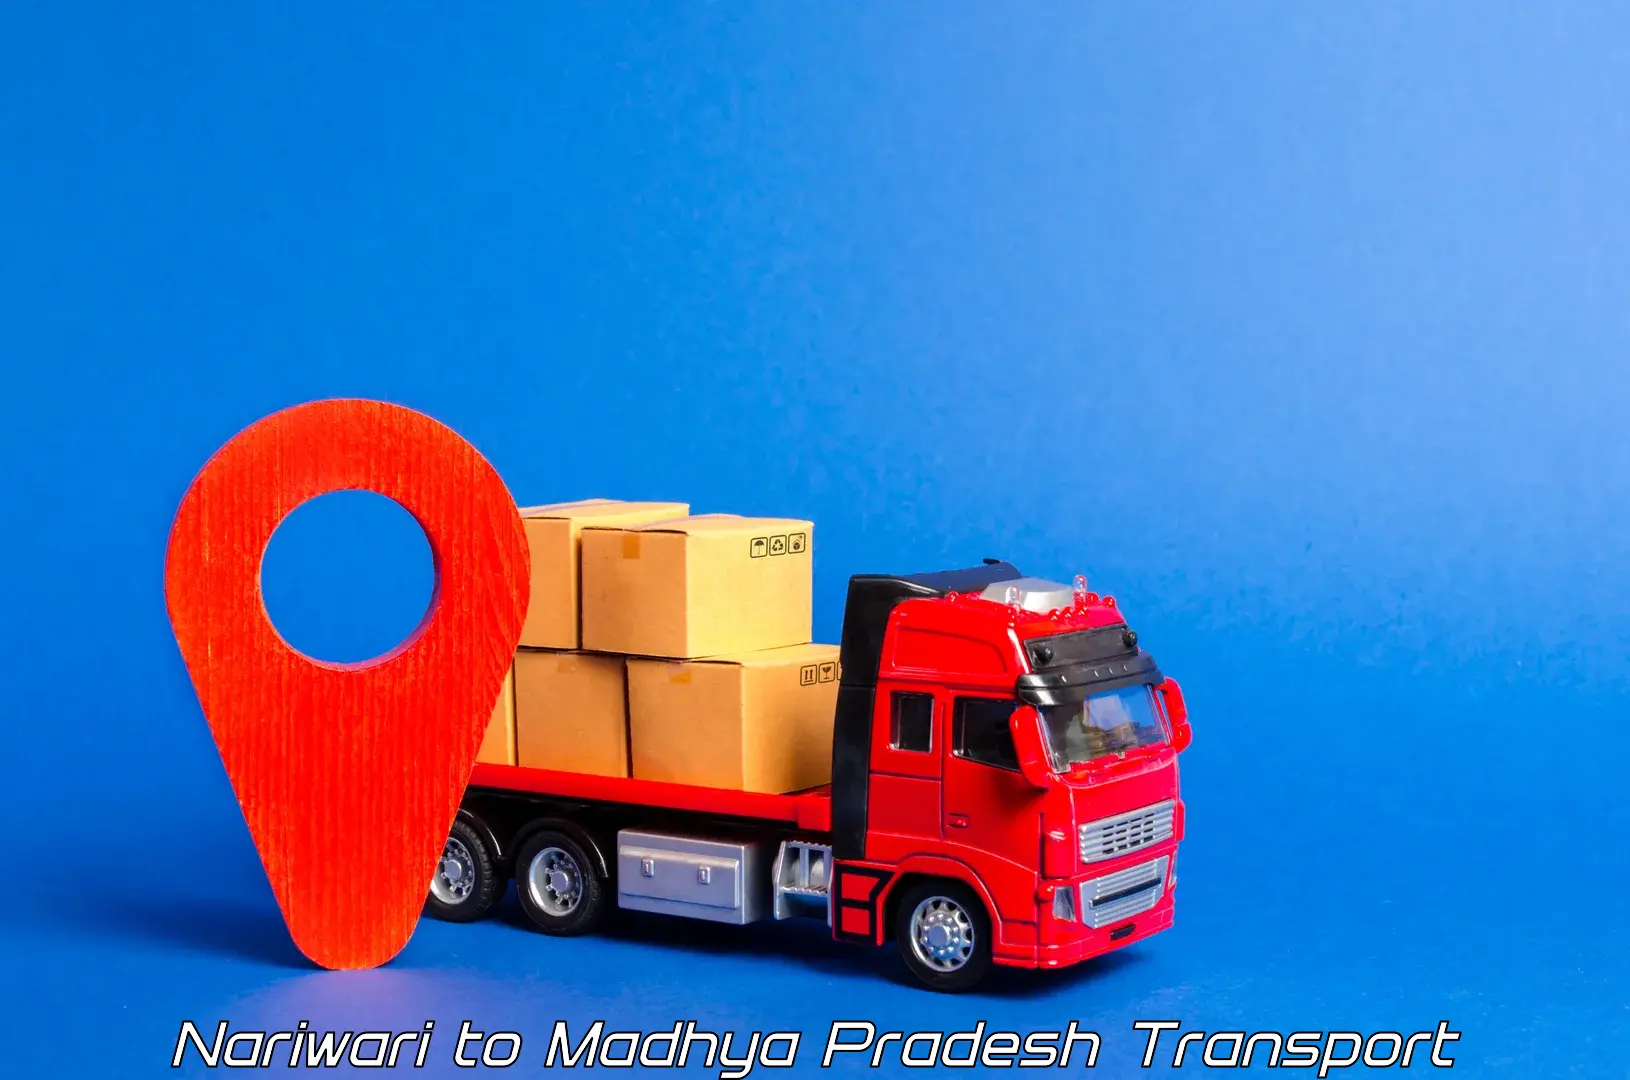 Nearby transport service in Nariwari to Ashoknagar